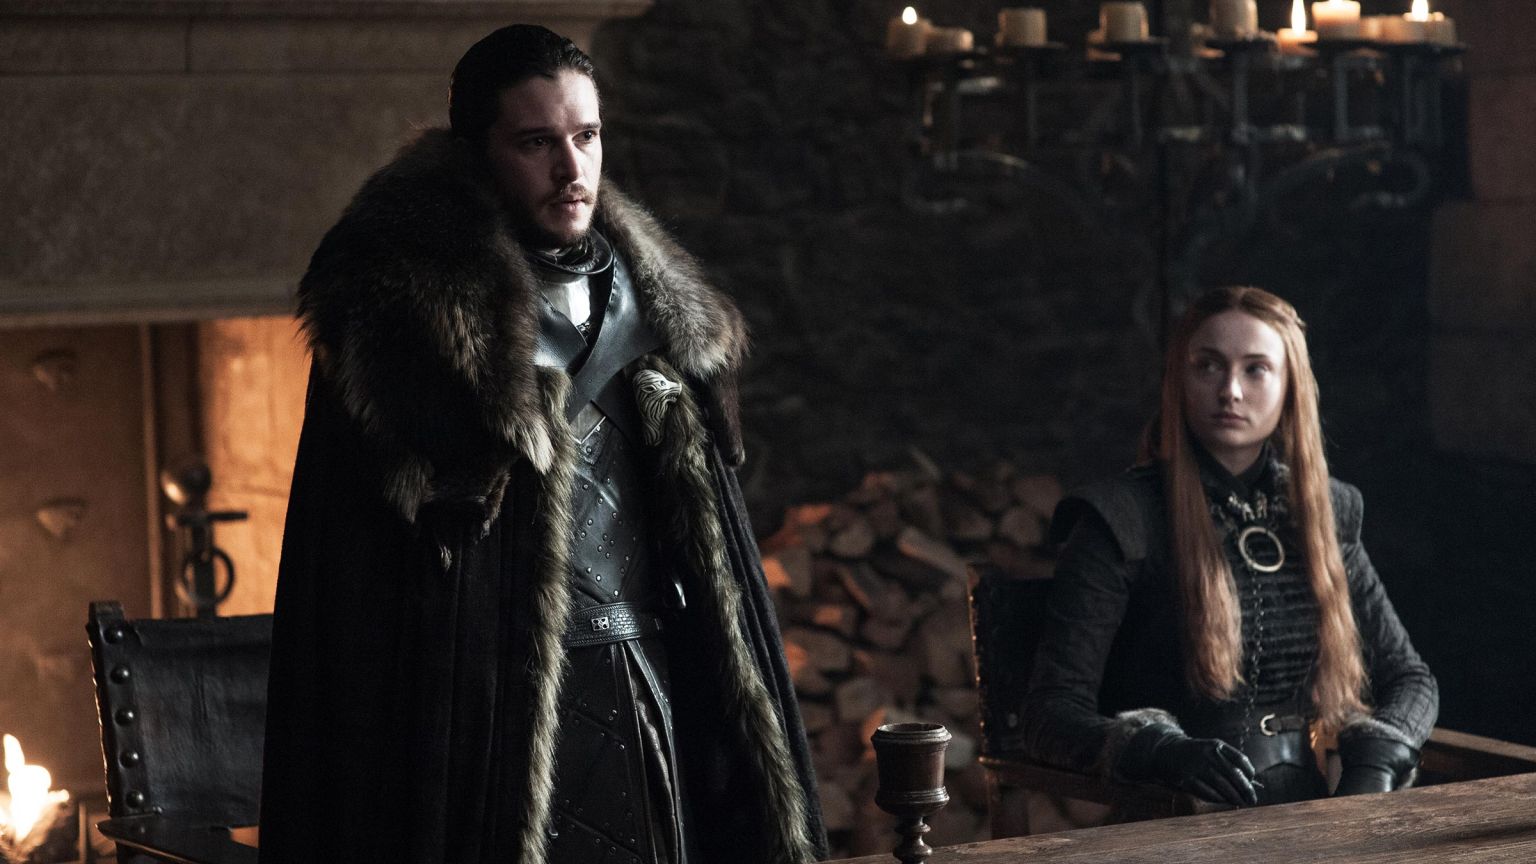 Kit Haringon as Jon Snow, Sophie Turner as Sansa Stark. Photo: Helen Sloan/HBO